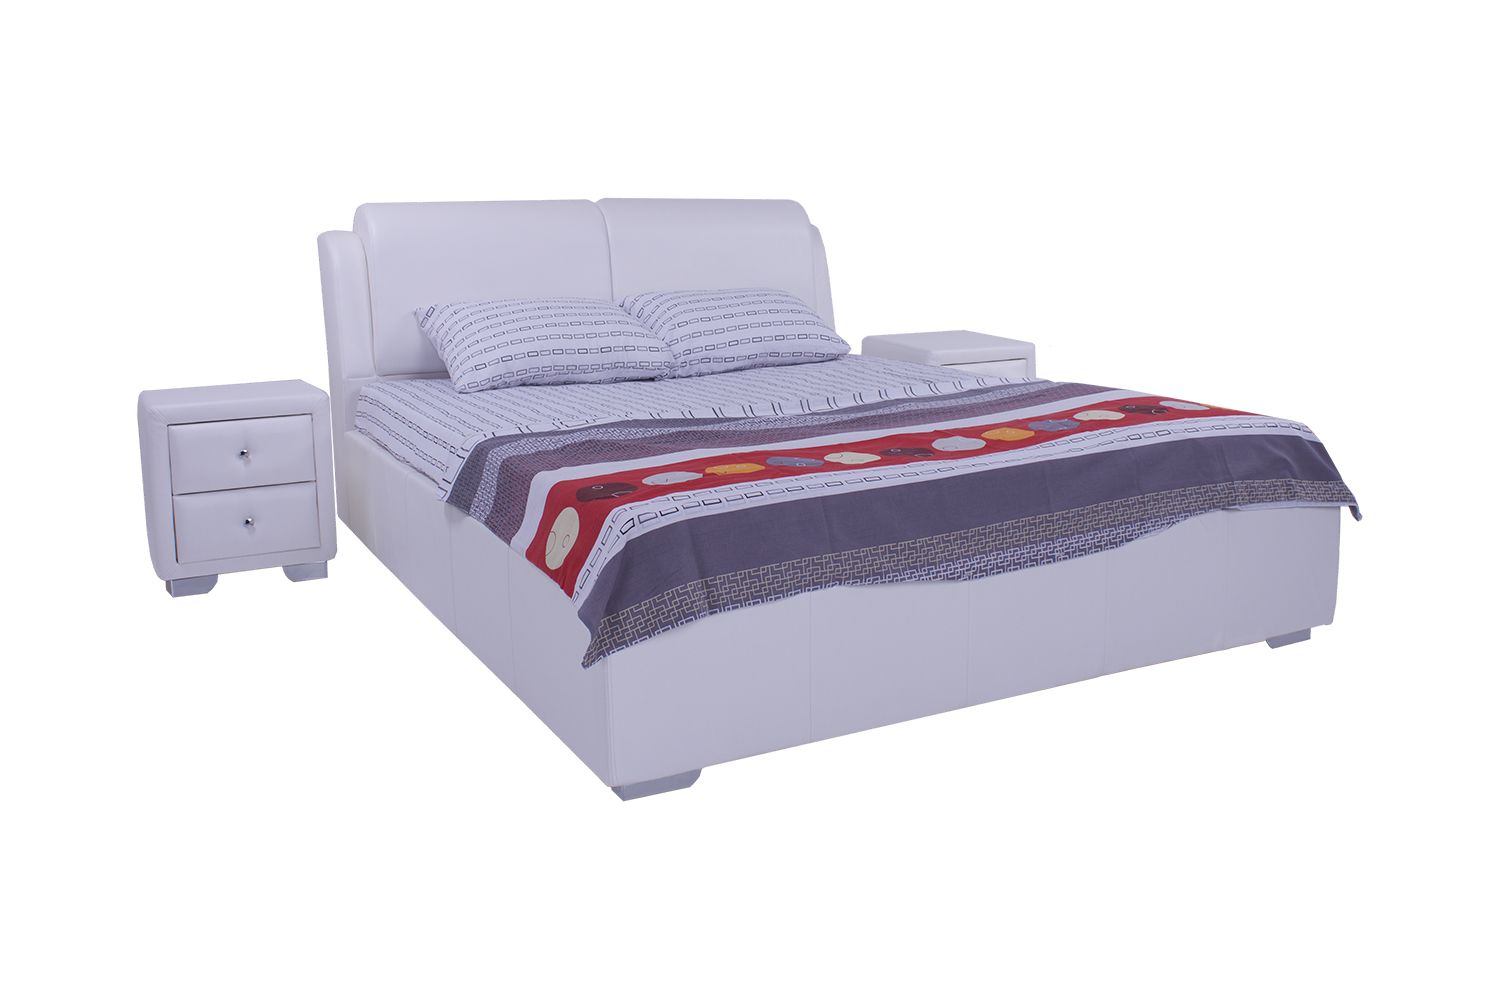 

Кровать со съемным чехлом Zevs-M Калифорния (деревянный каркас) Boom 01 белая 160х190